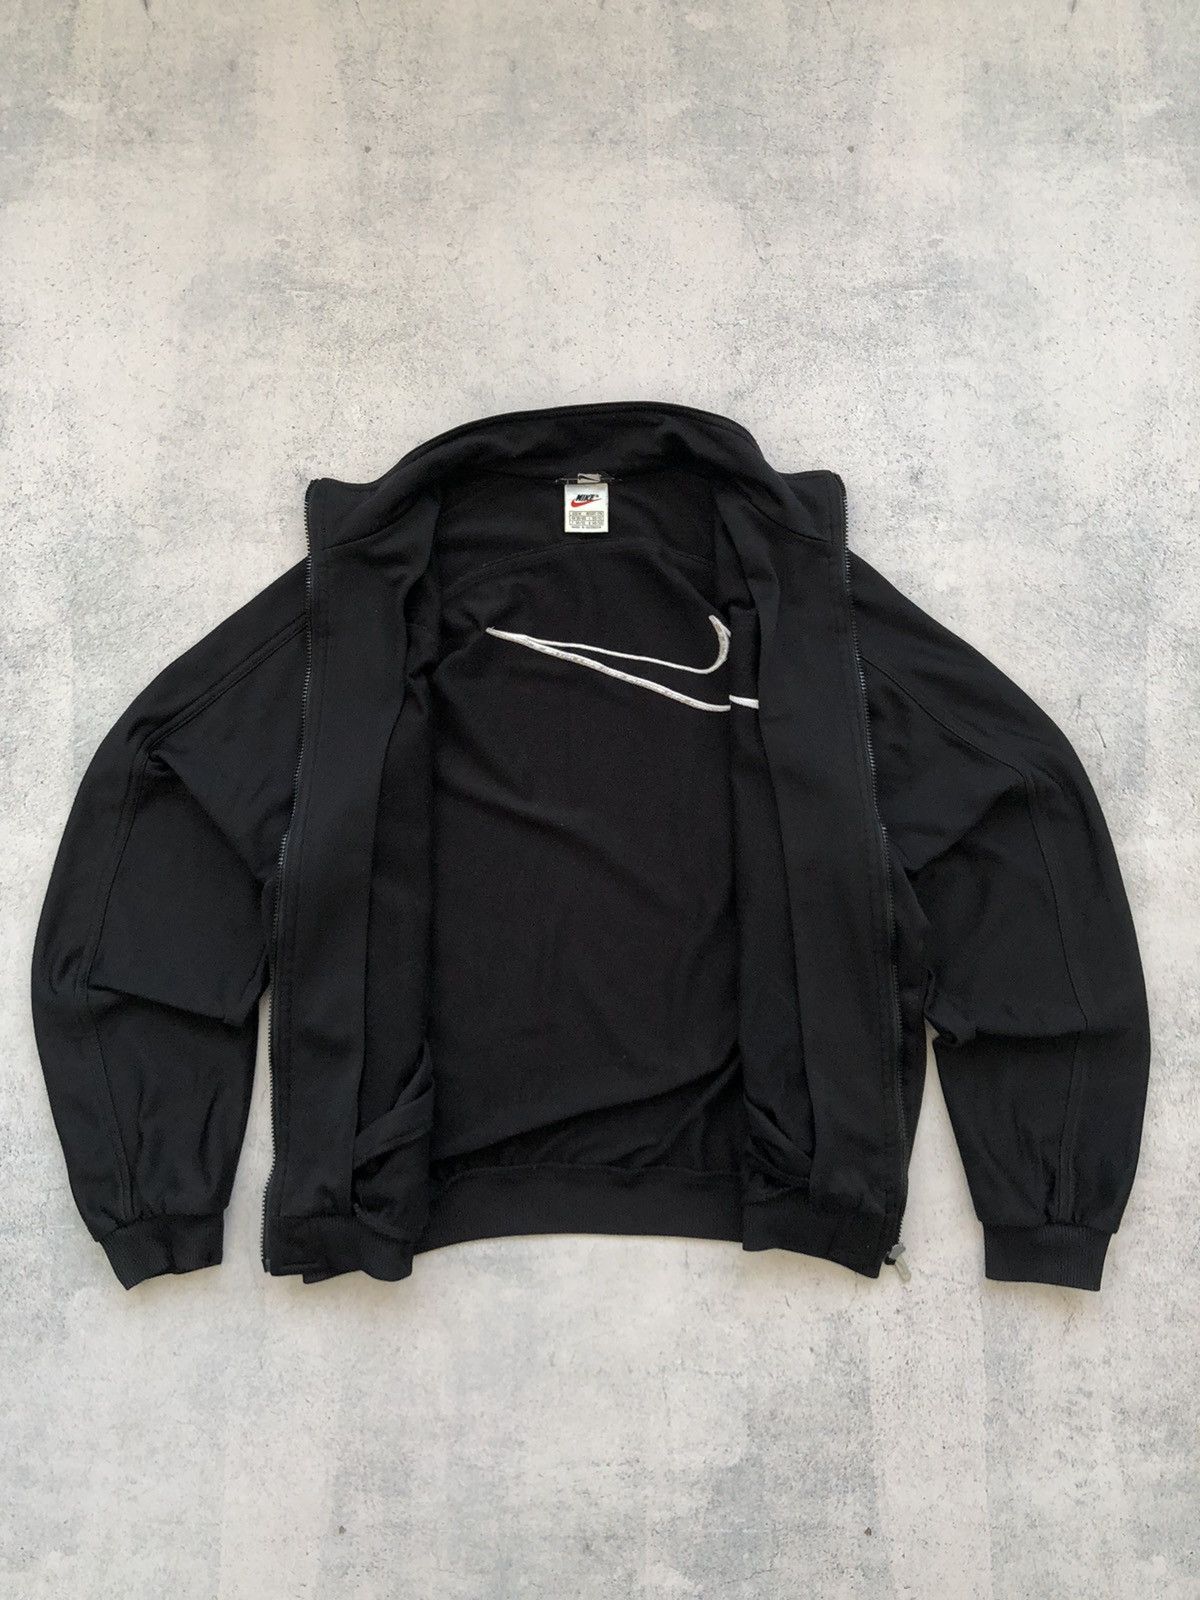 公式/送料無料 Nike × fear of god hooded bomber jacket - メンズ